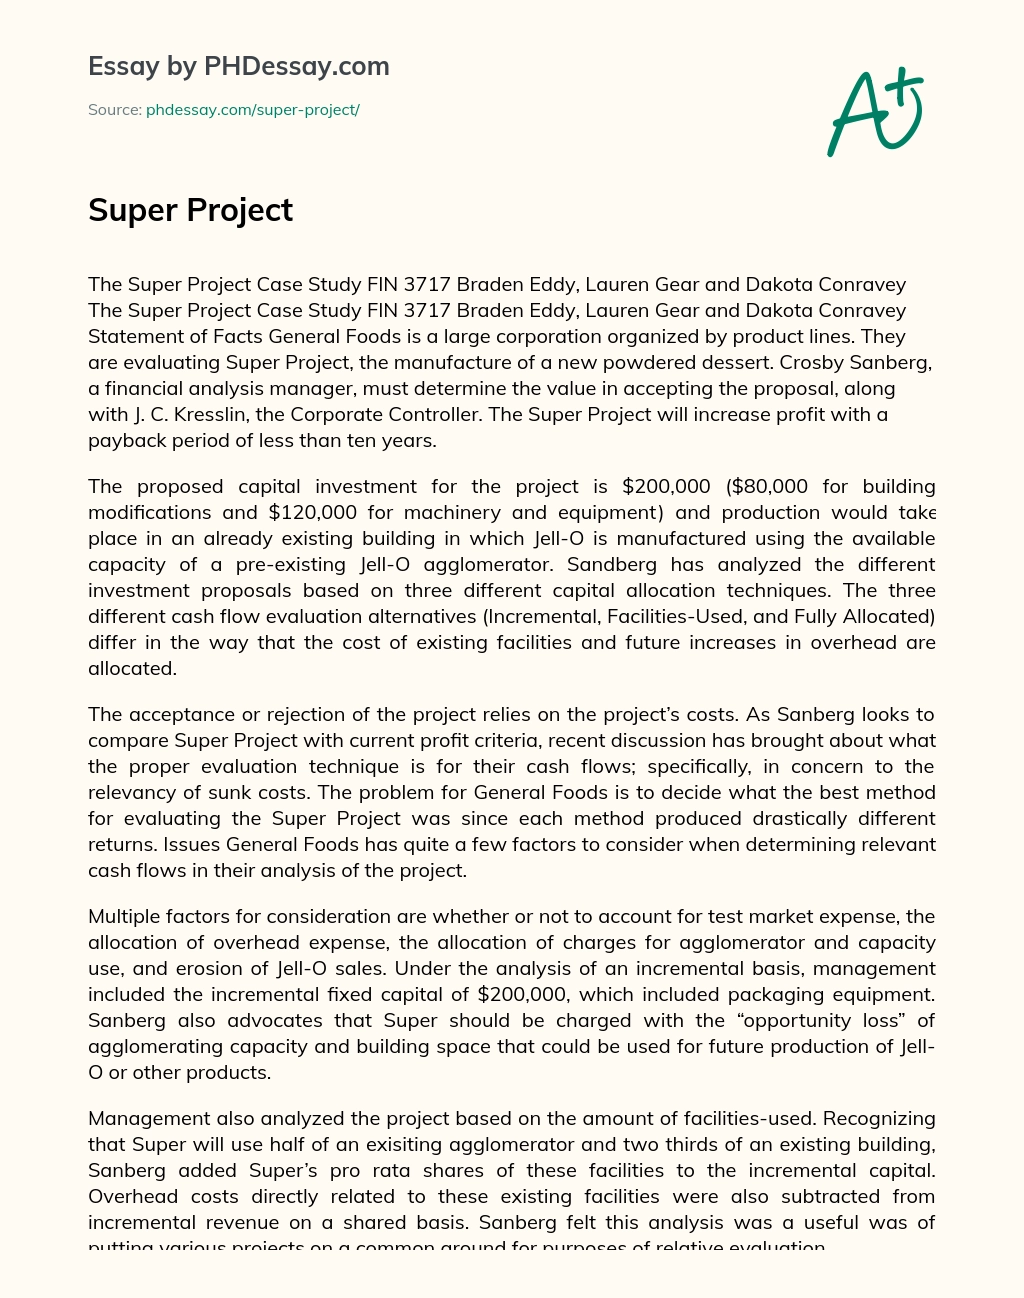 Super Project essay